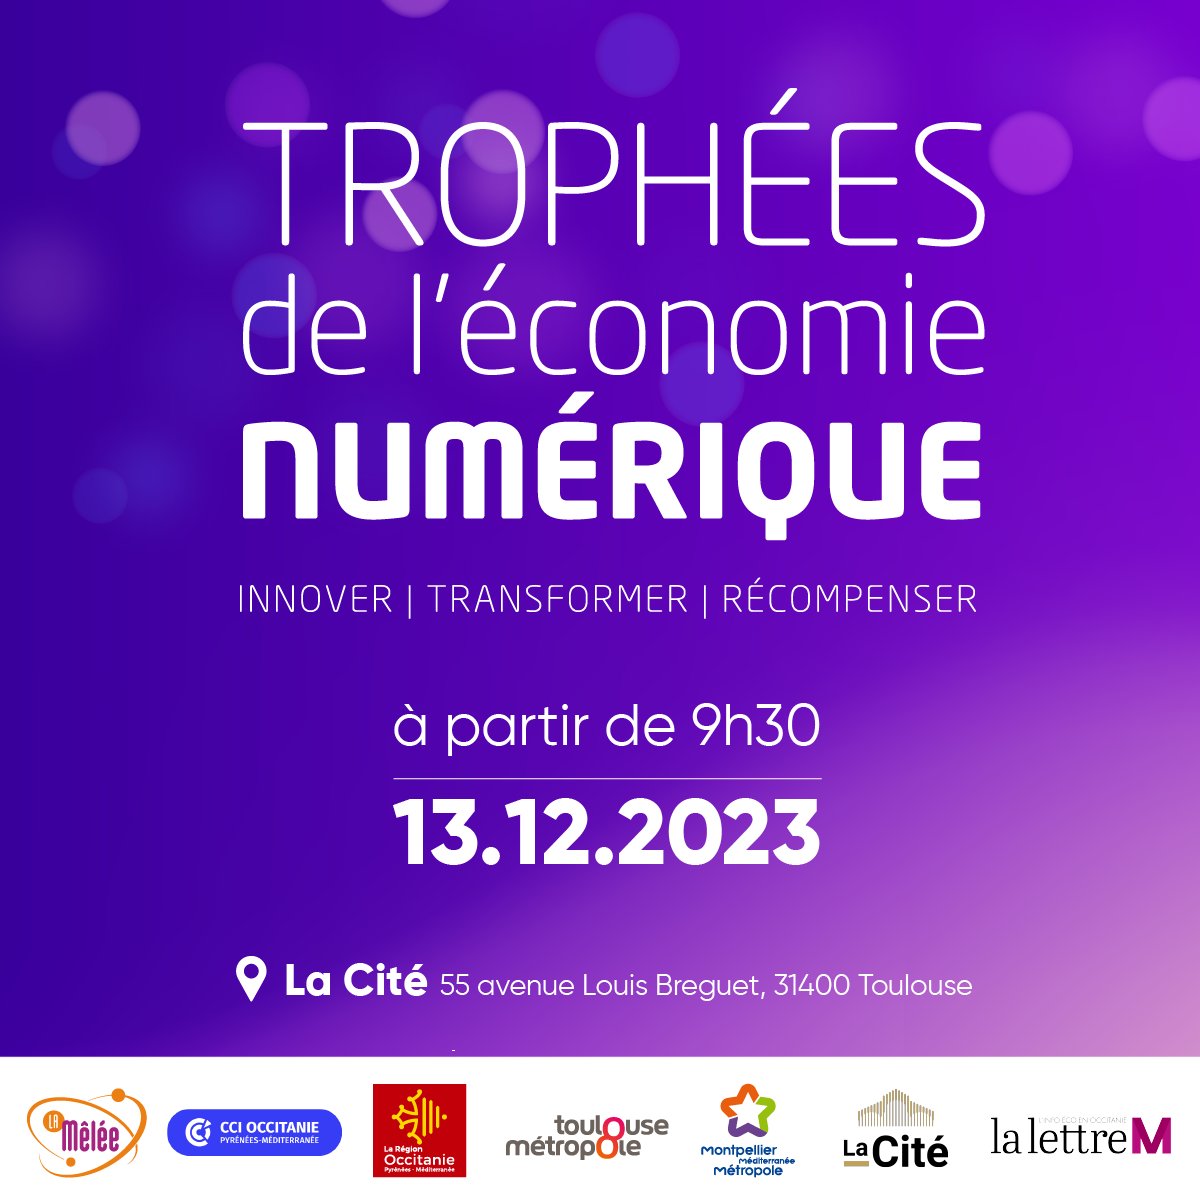 🏆 Participez aux Trophées de l'Économie Numérique le 13/12/2023 à @LaCite_eu. Rejoignez-nous pour célébrer l'innovation. Inscrivez-vous maintenant swll.to/TEN_2023 @CCIoccitanie @Occitanie @toulouse @Montpellier3m @lalettremnews #TEN2023 #événement